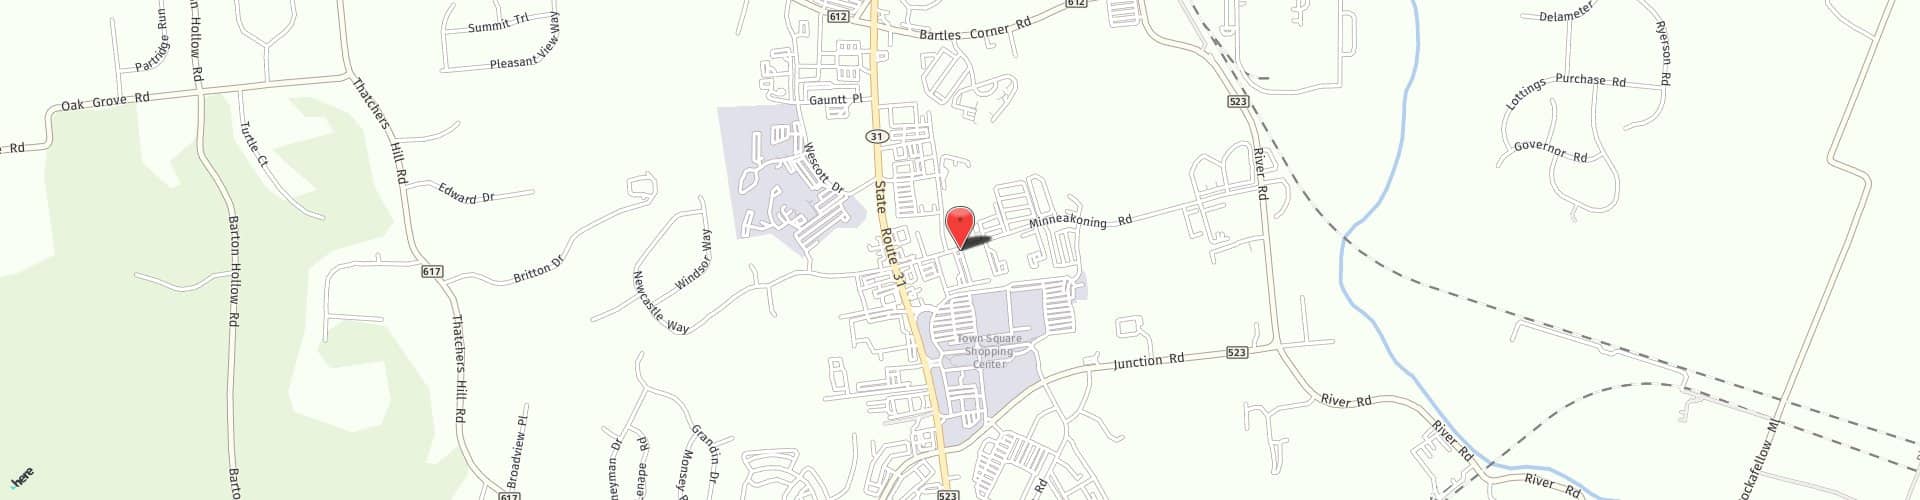 Location Map: 6B Minneakoning Rd Flemington, NJ 08822